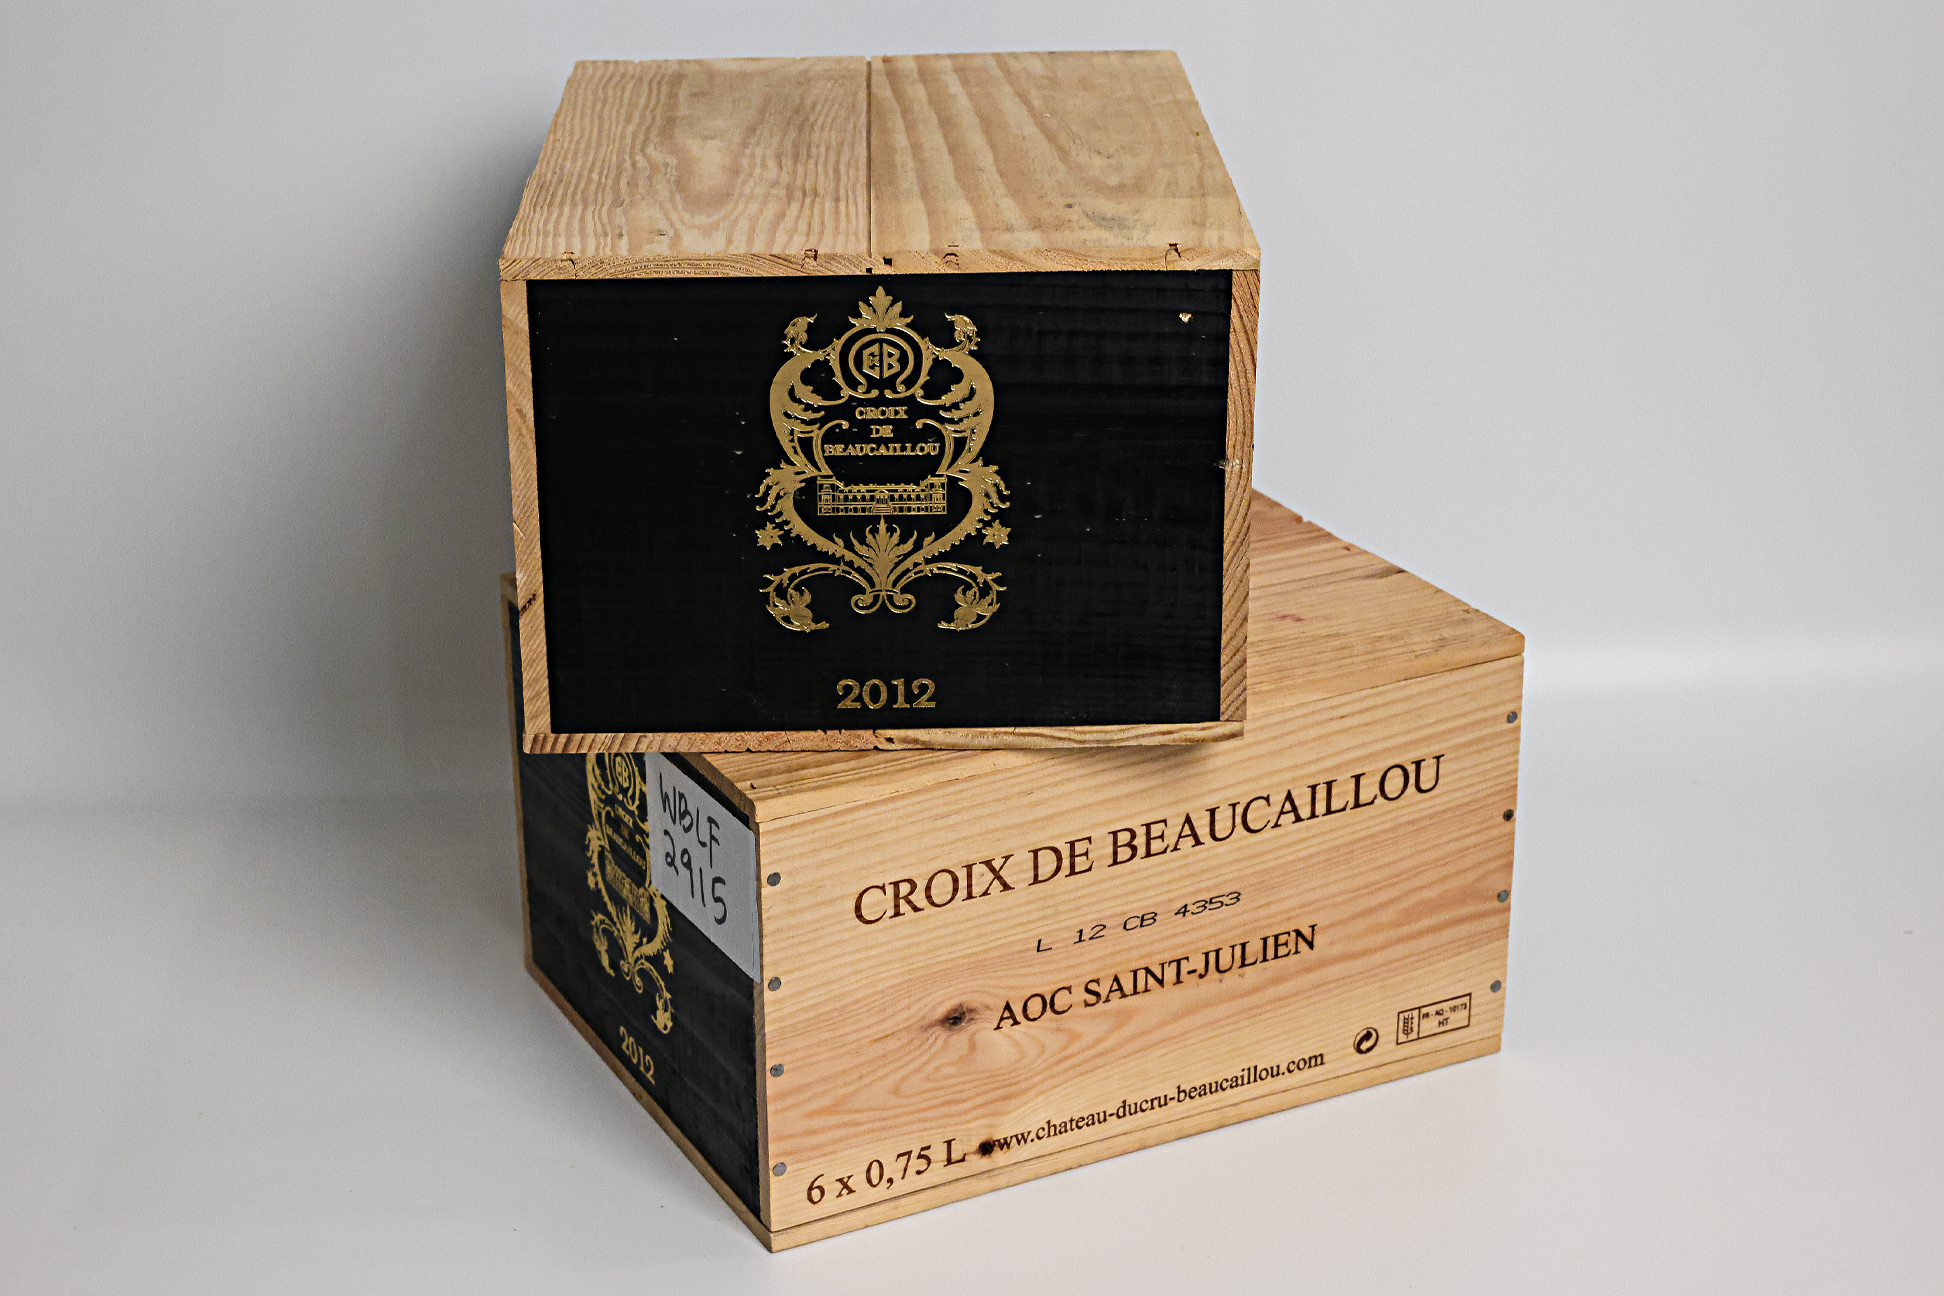 CH. DUCRU-BEAUCAILLOU 'LA CROIX DE BEAUCAILLOU' 2012 (12 BT) - Image 2 of 2